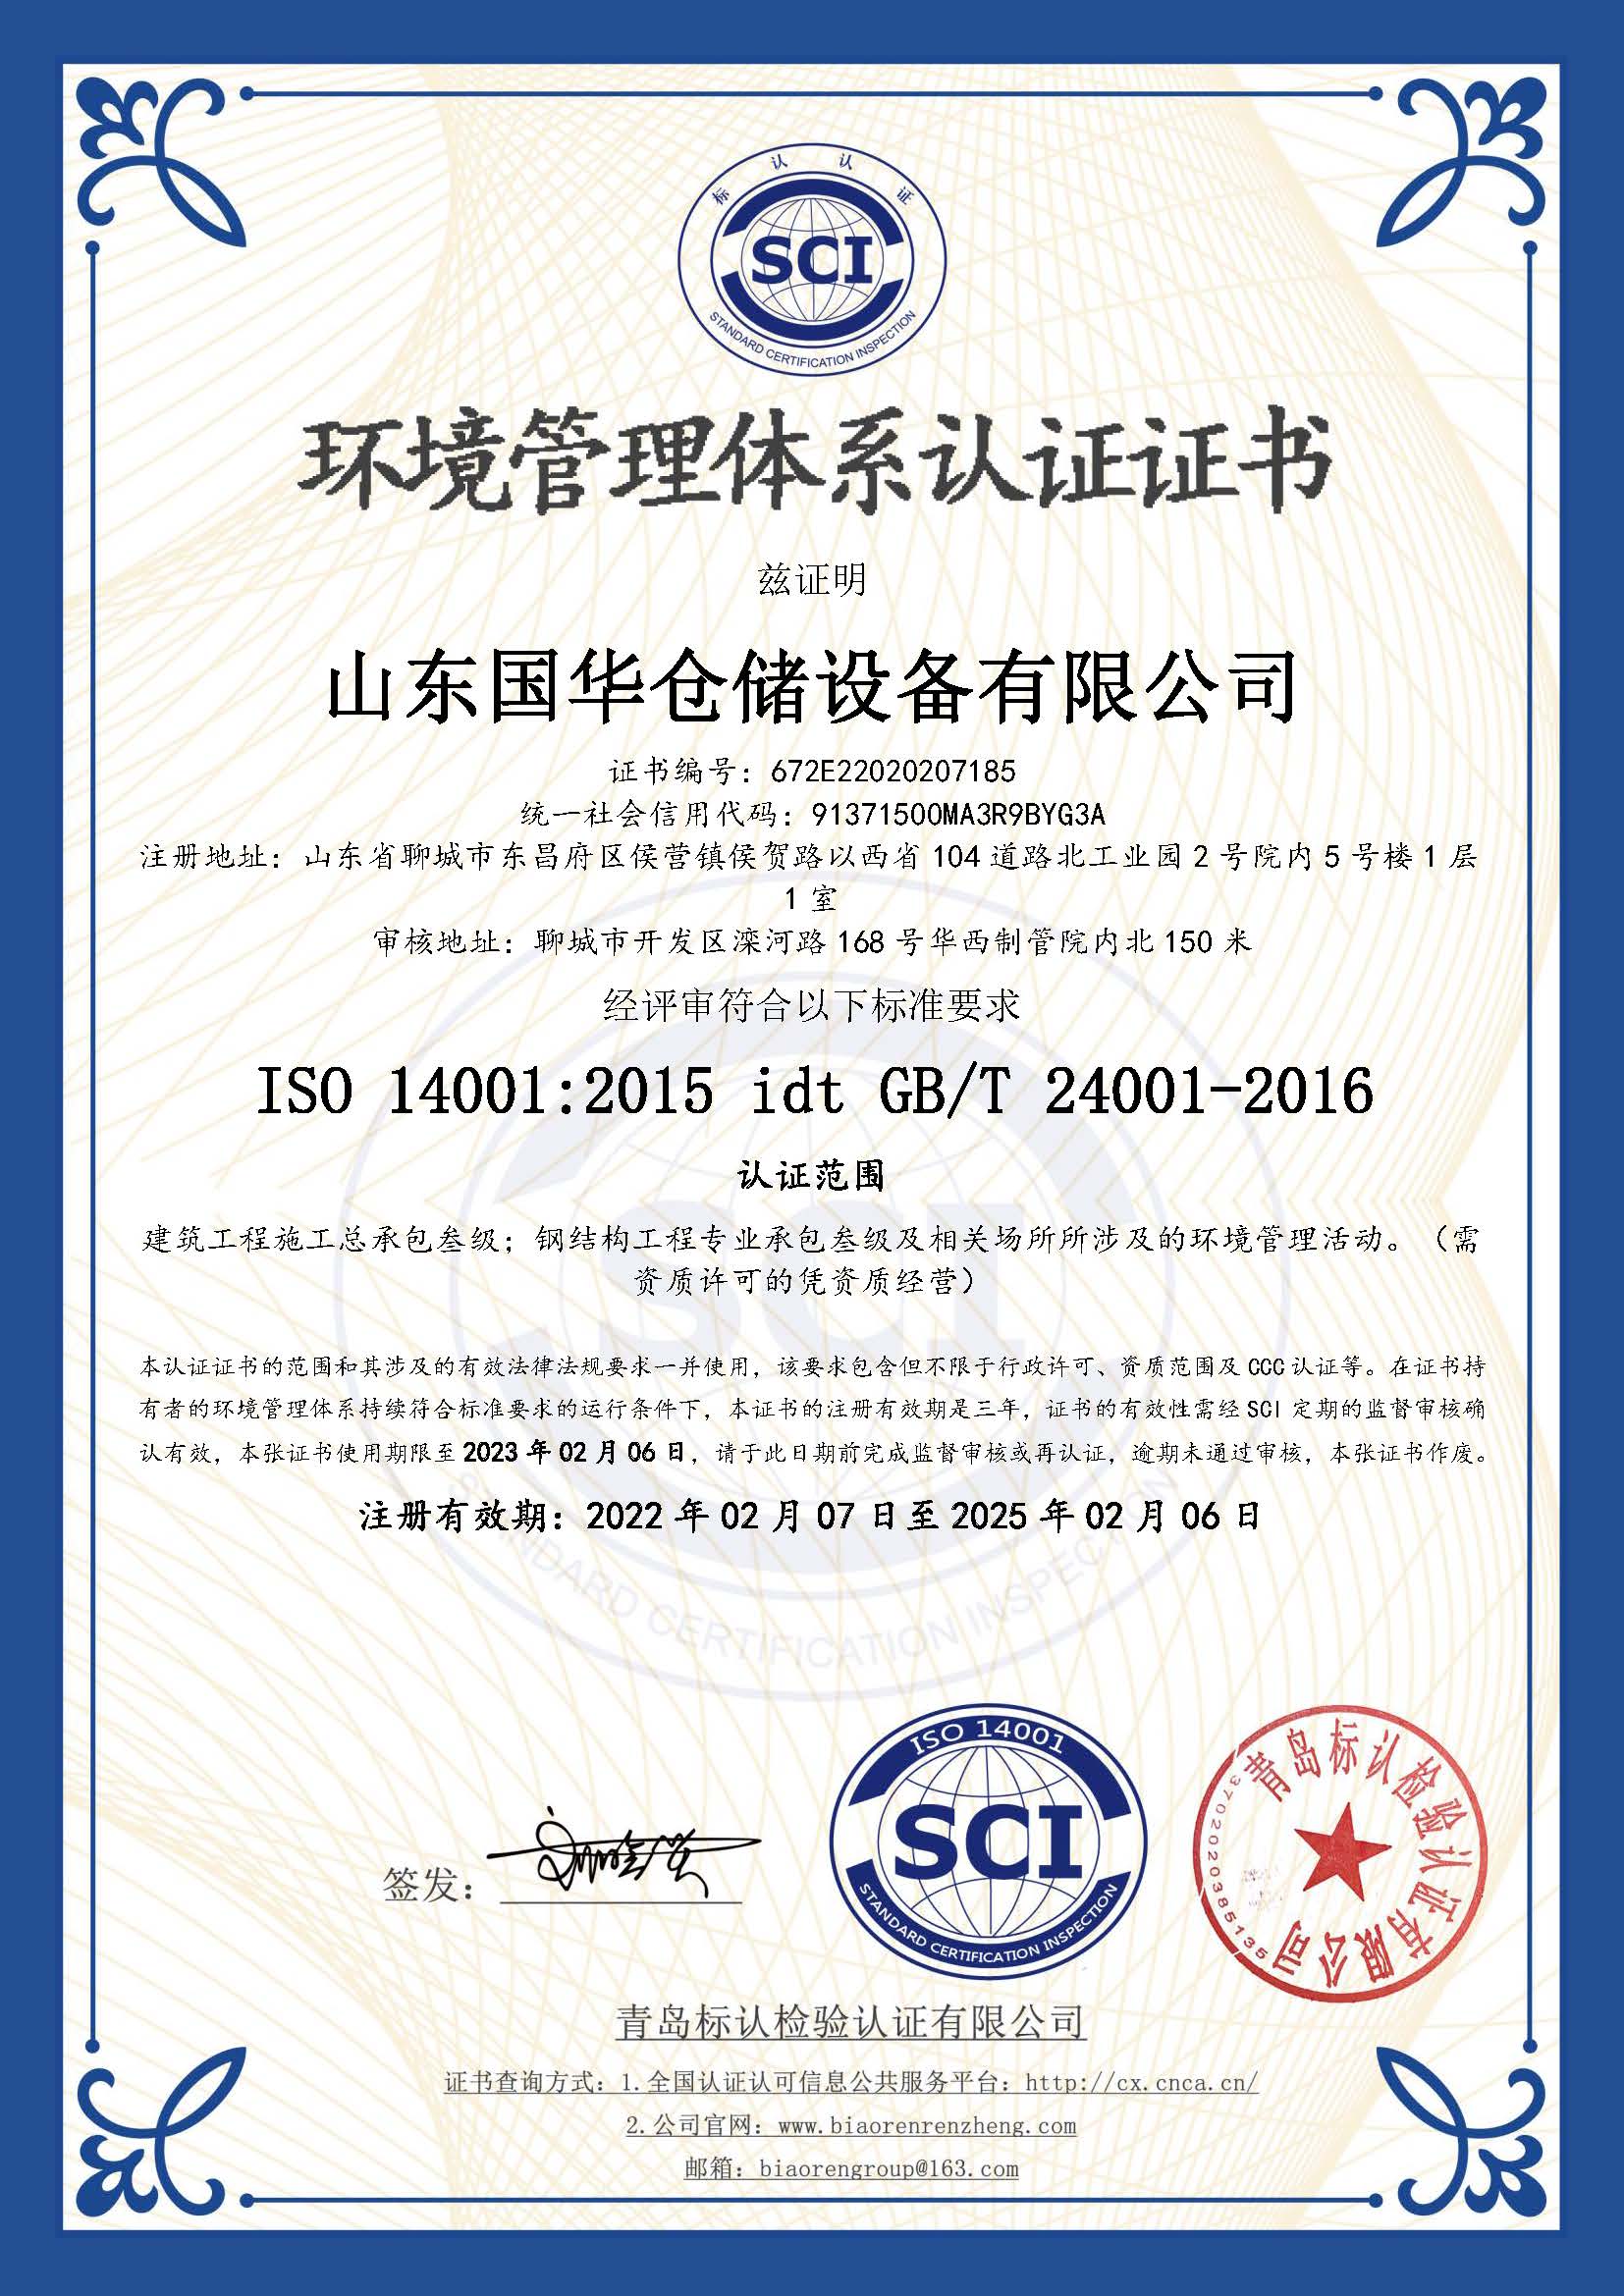 白沙钢板仓环境管理体系认证证书